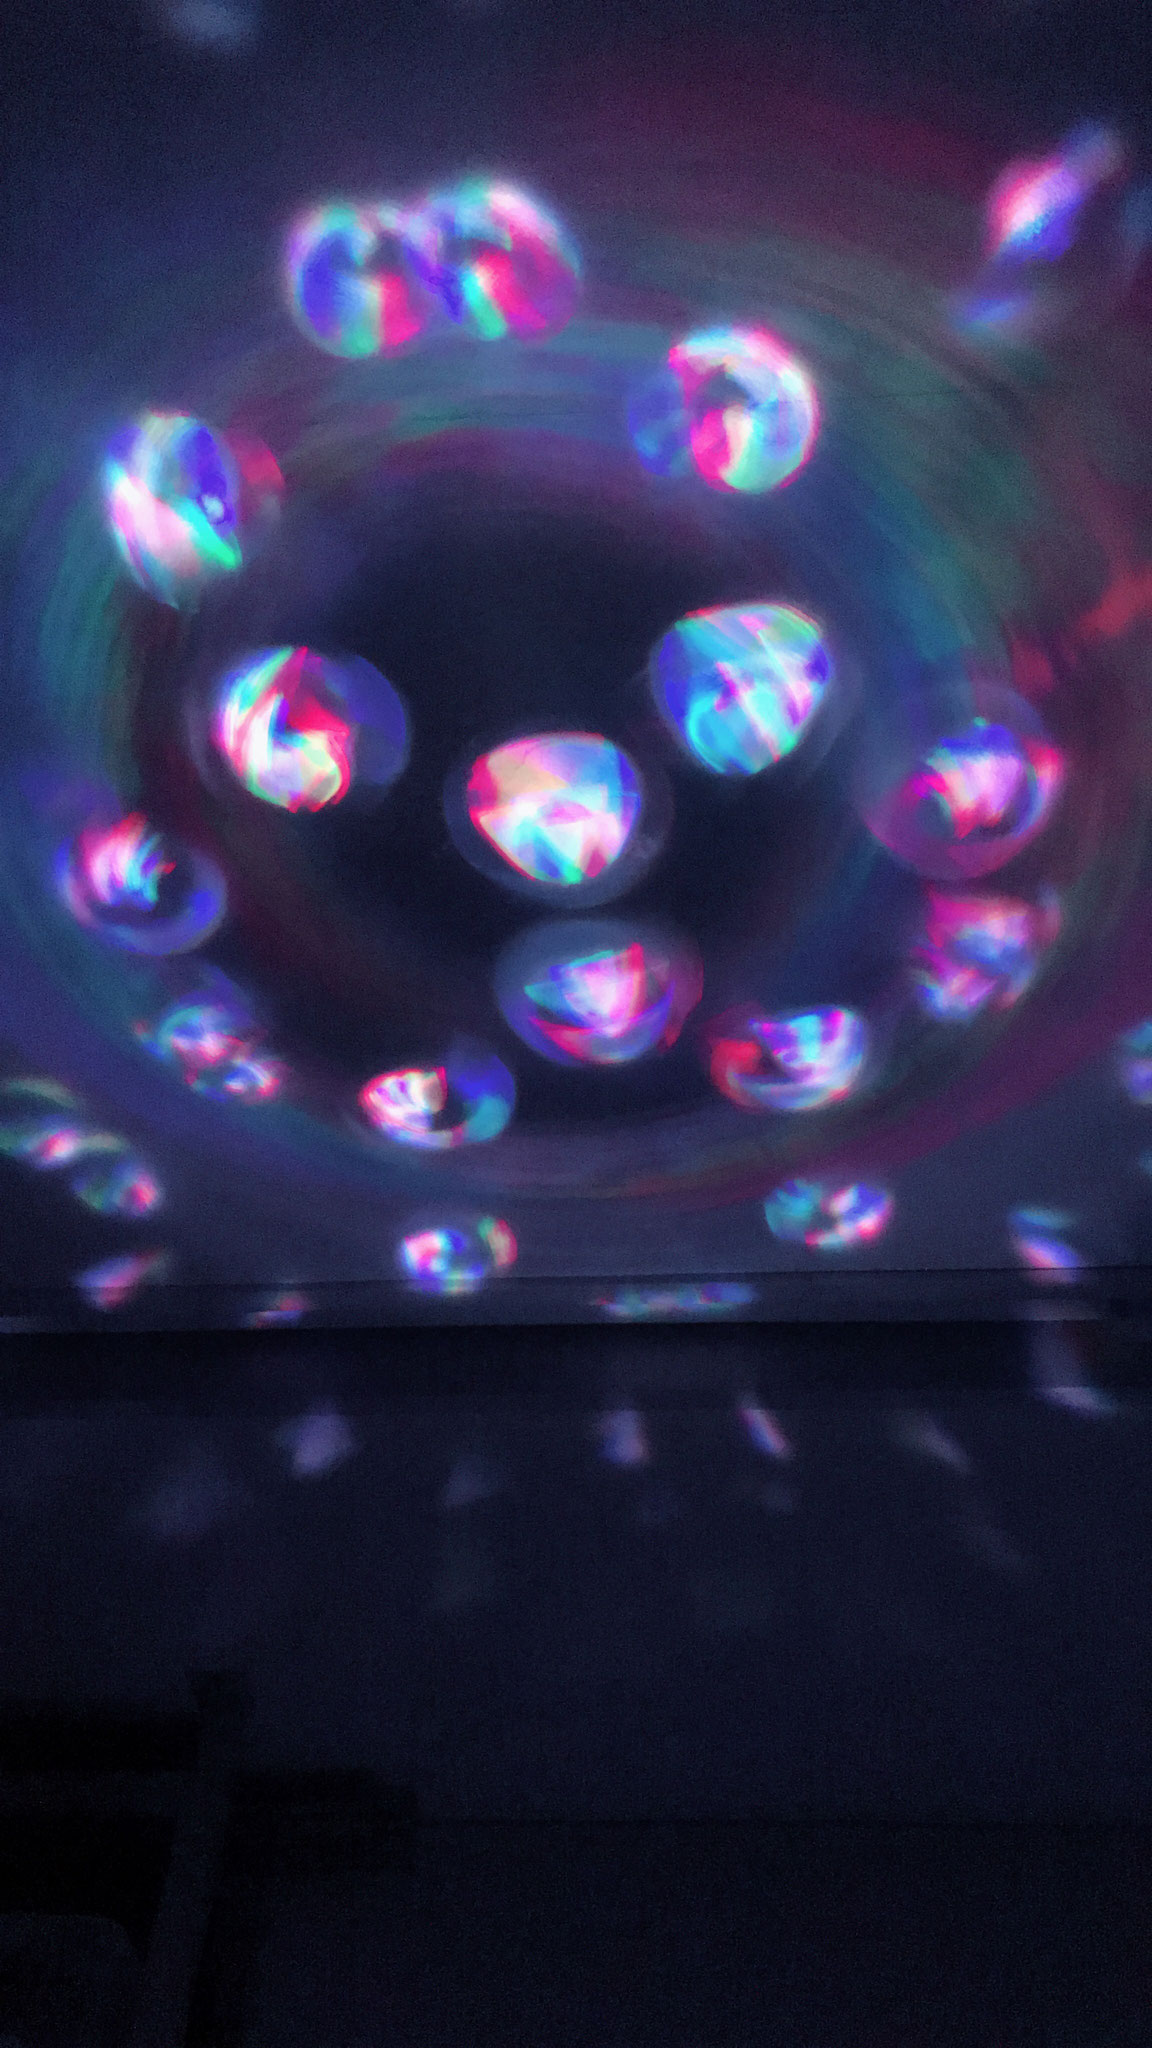 バブルチューブの光を利用した投影式万華鏡の研究